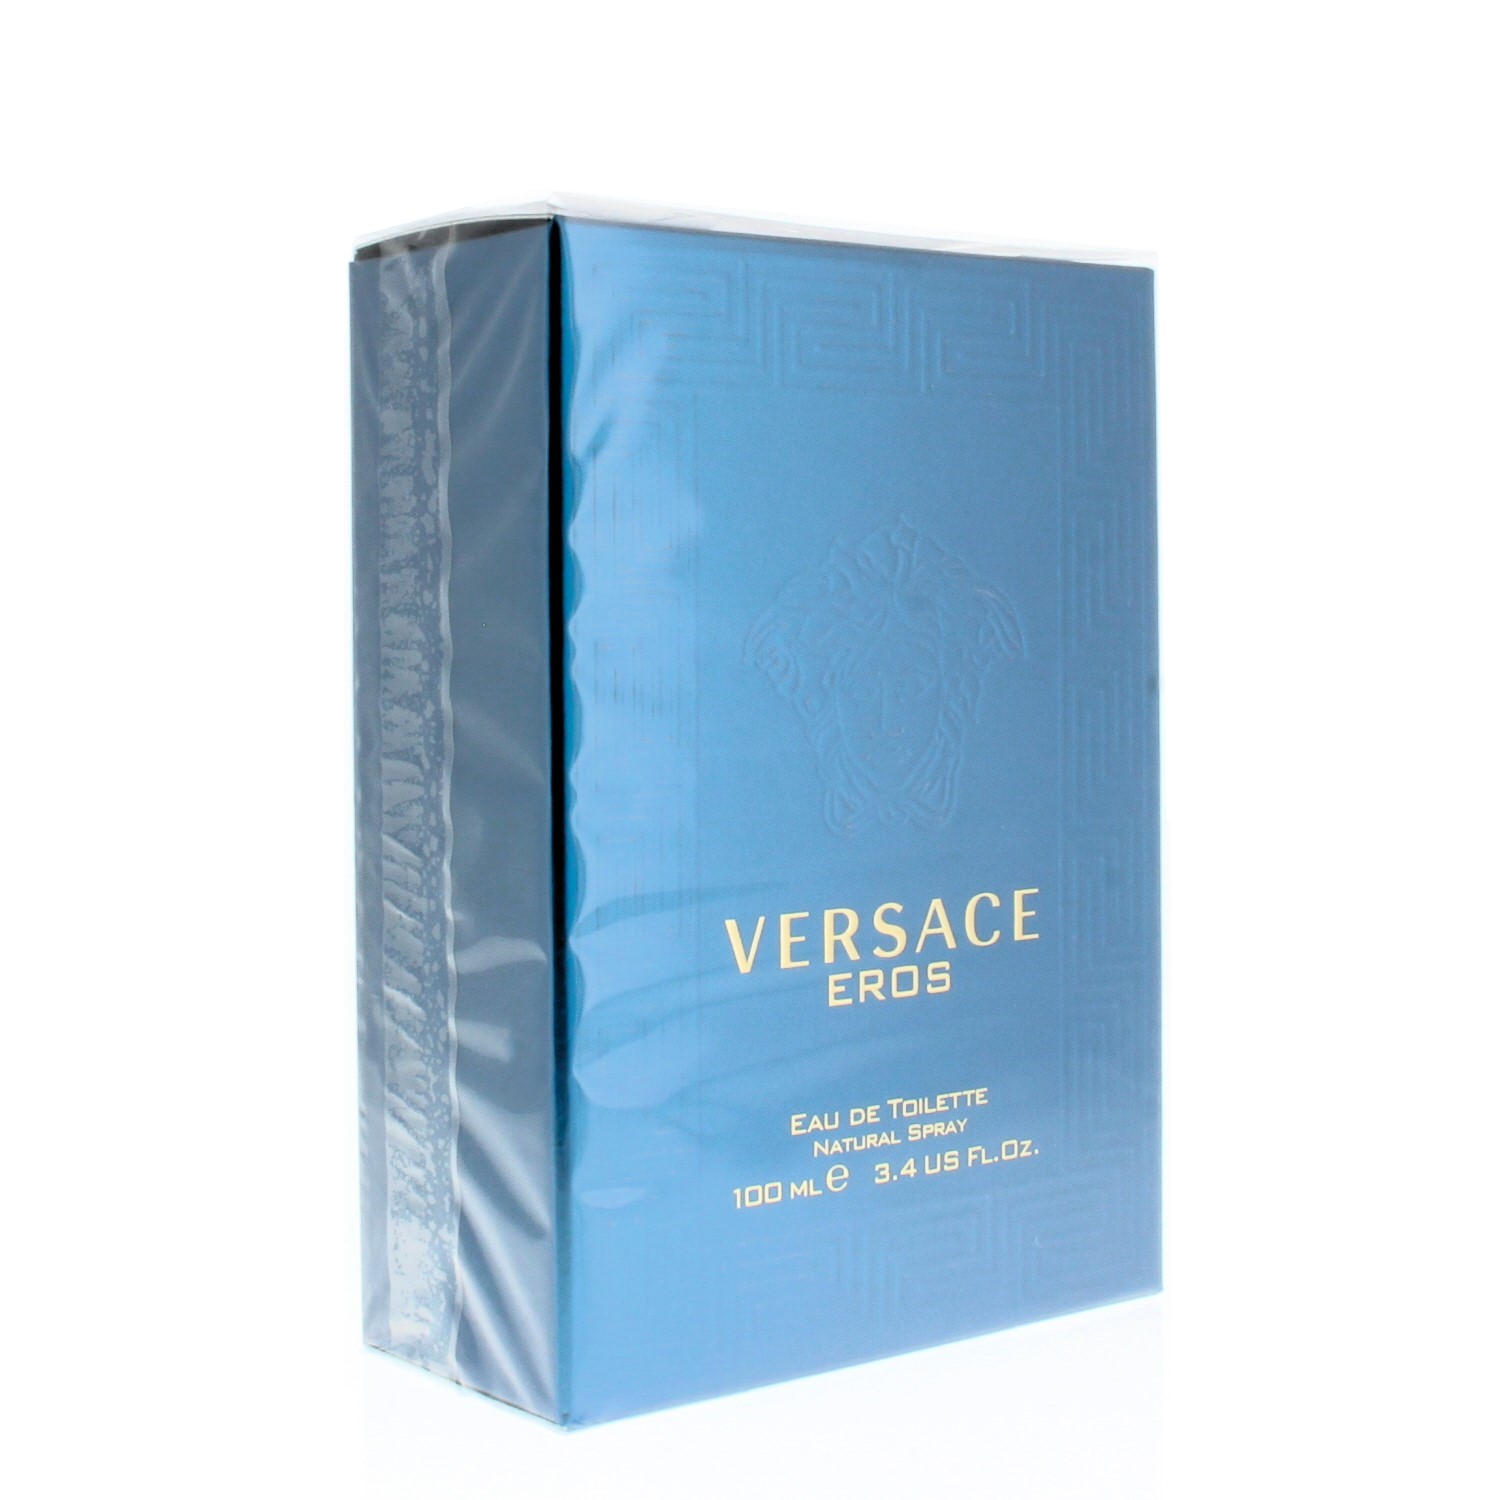 Versace Eros Eau de Toilette Spray, Cologne for Men, 3.4 oz - image 2 of 4